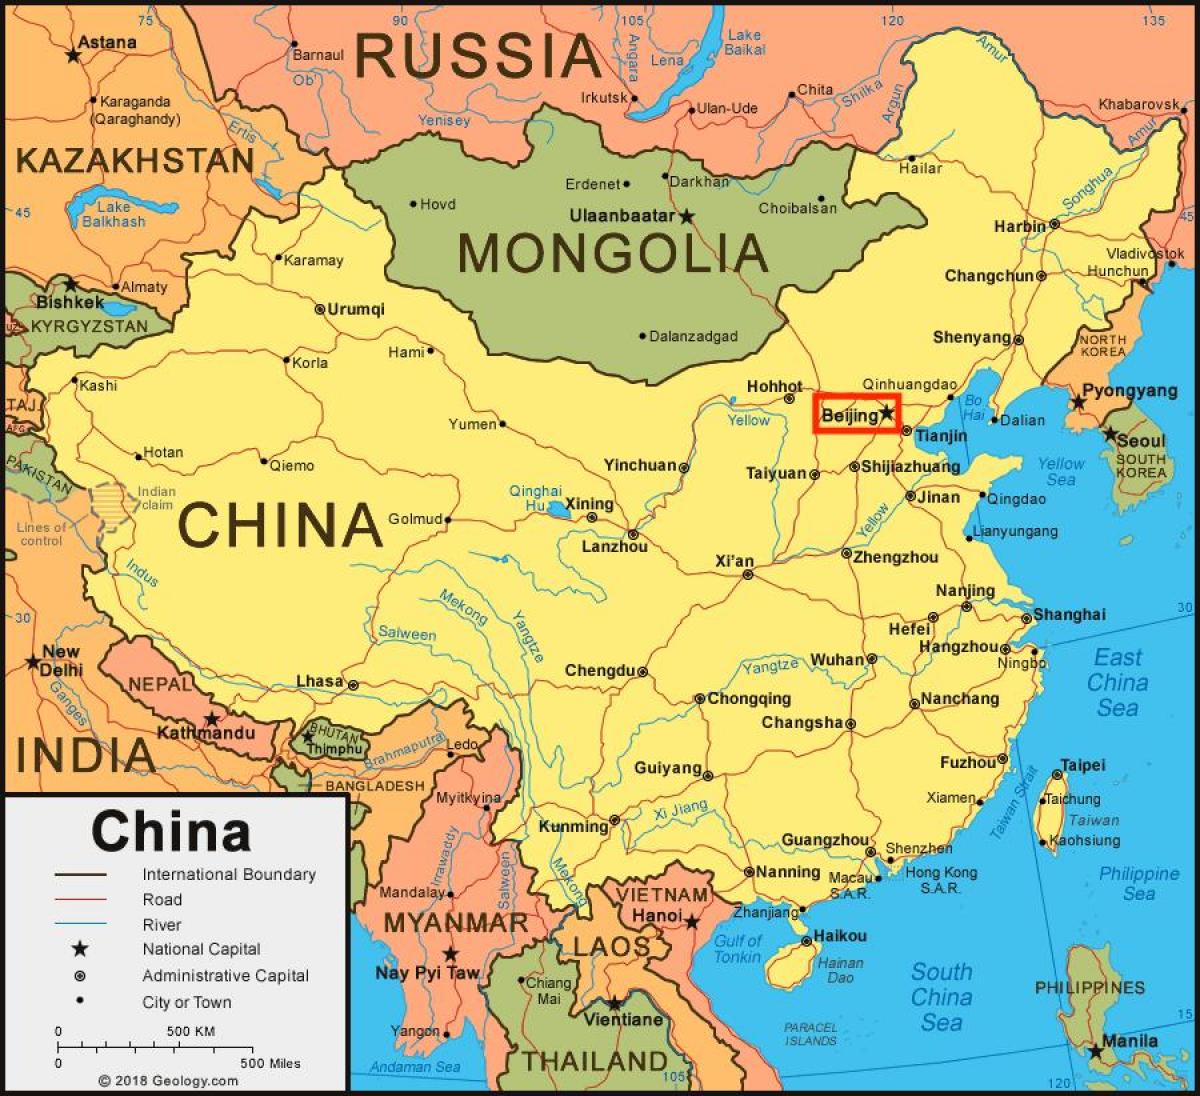 Pechino (Peking) sulla mappa della Cina